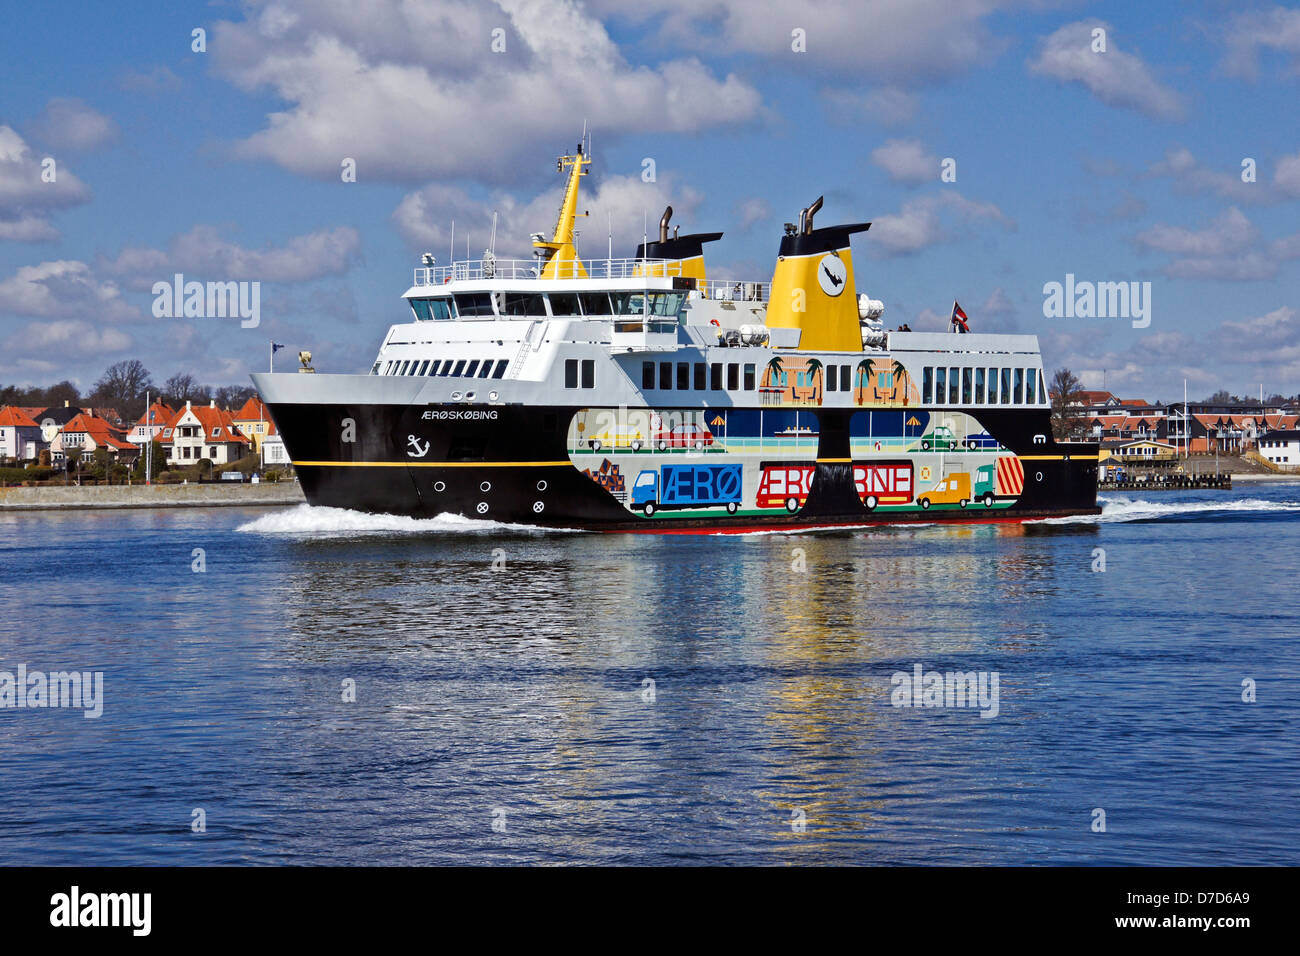 AErøfaergerne AErøskøbing M/F vient de quitter son poste à quai dans le port de Svendborg, Danemark et la position d'AErøskøbing sur l'île ærø Banque D'Images